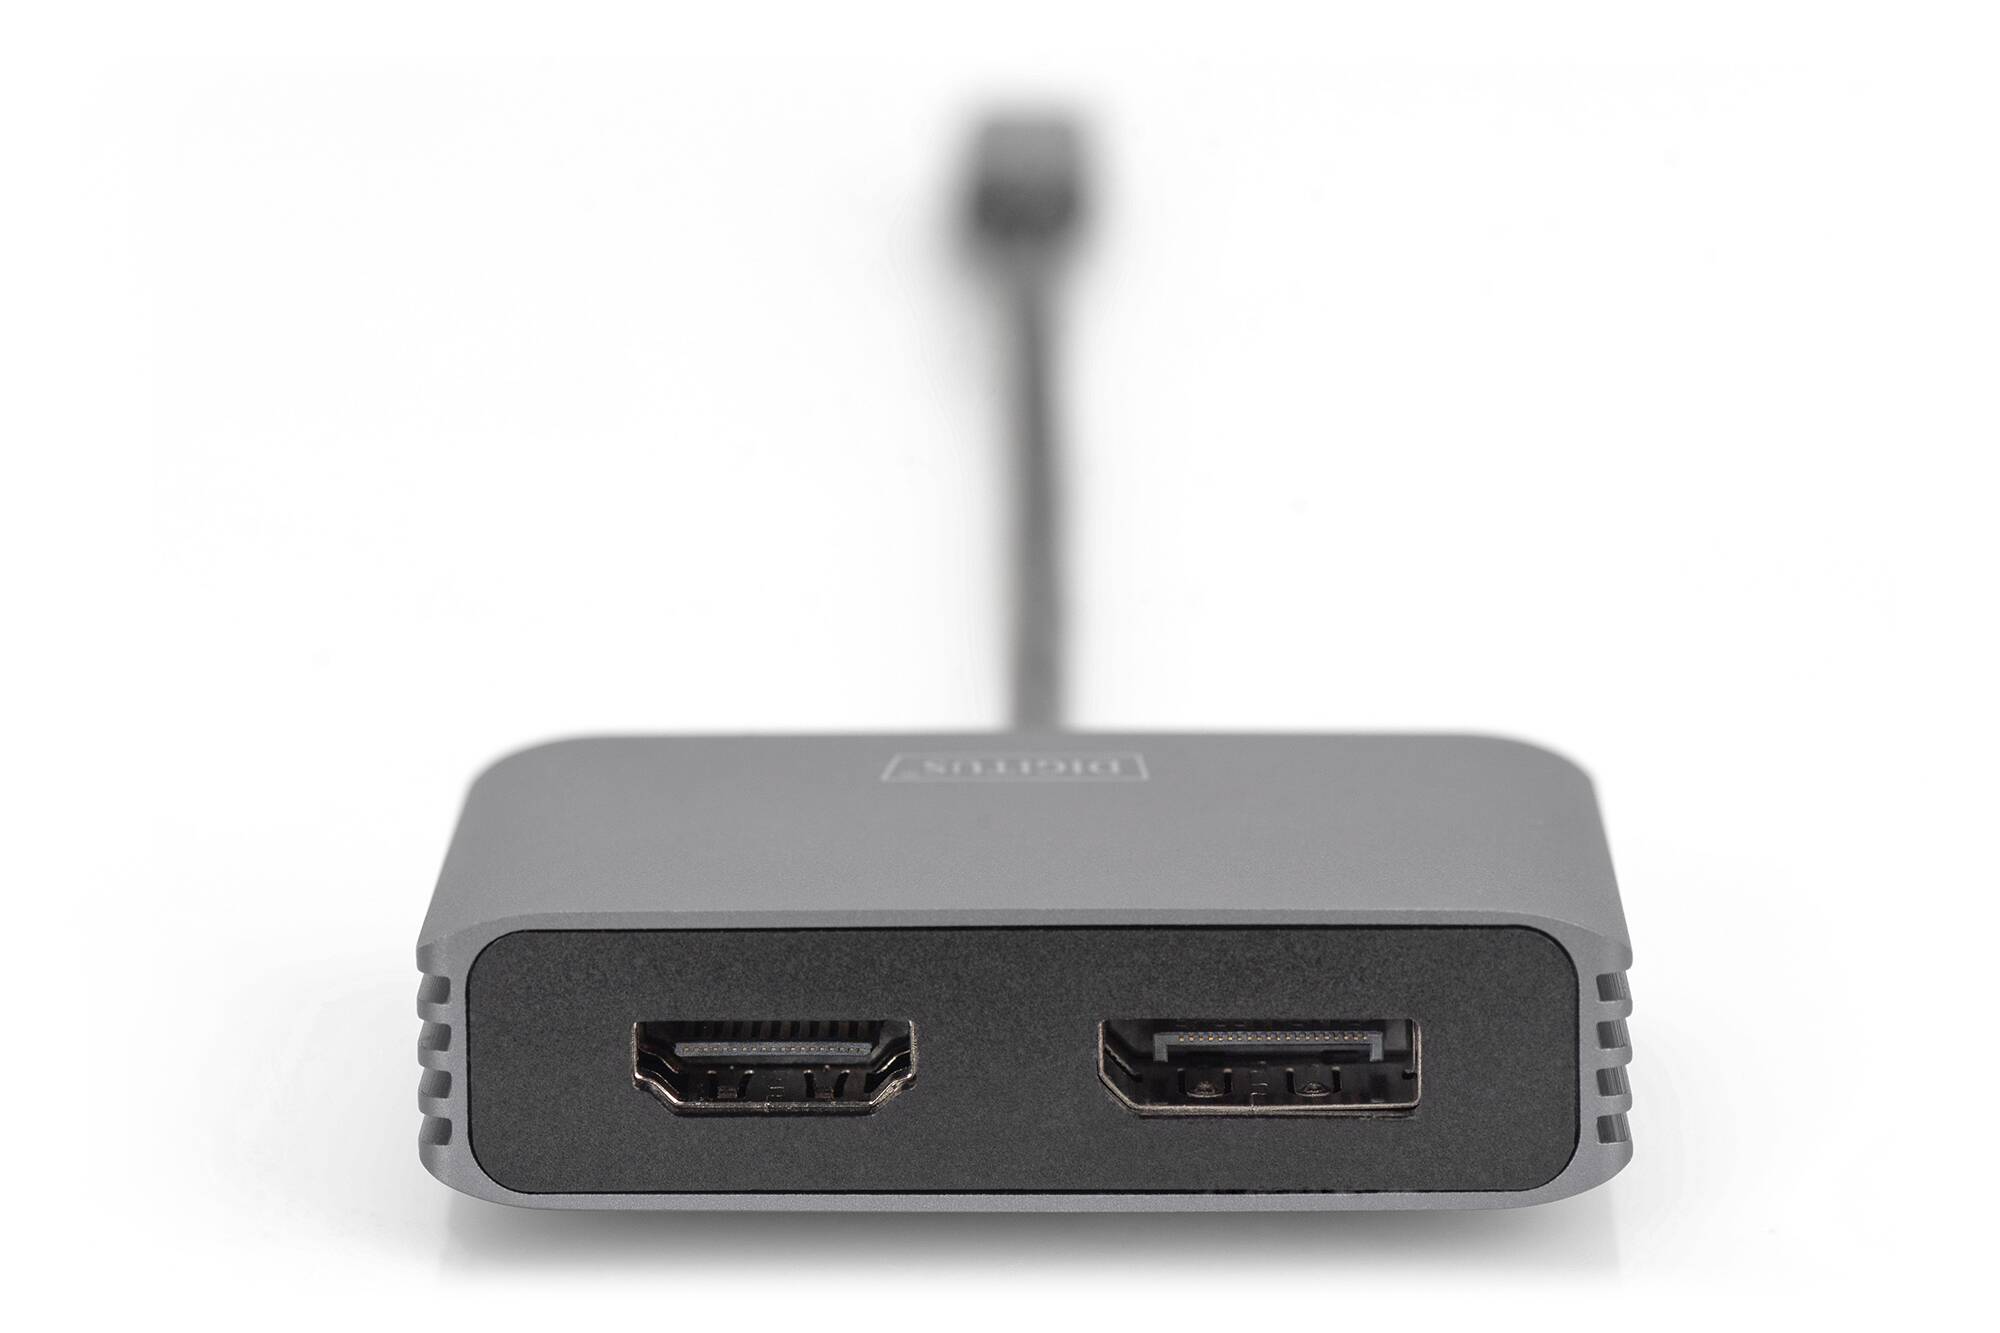 USB Type-C 4K 2-in-1 DisplayPort + HDMI Graphics Adapter